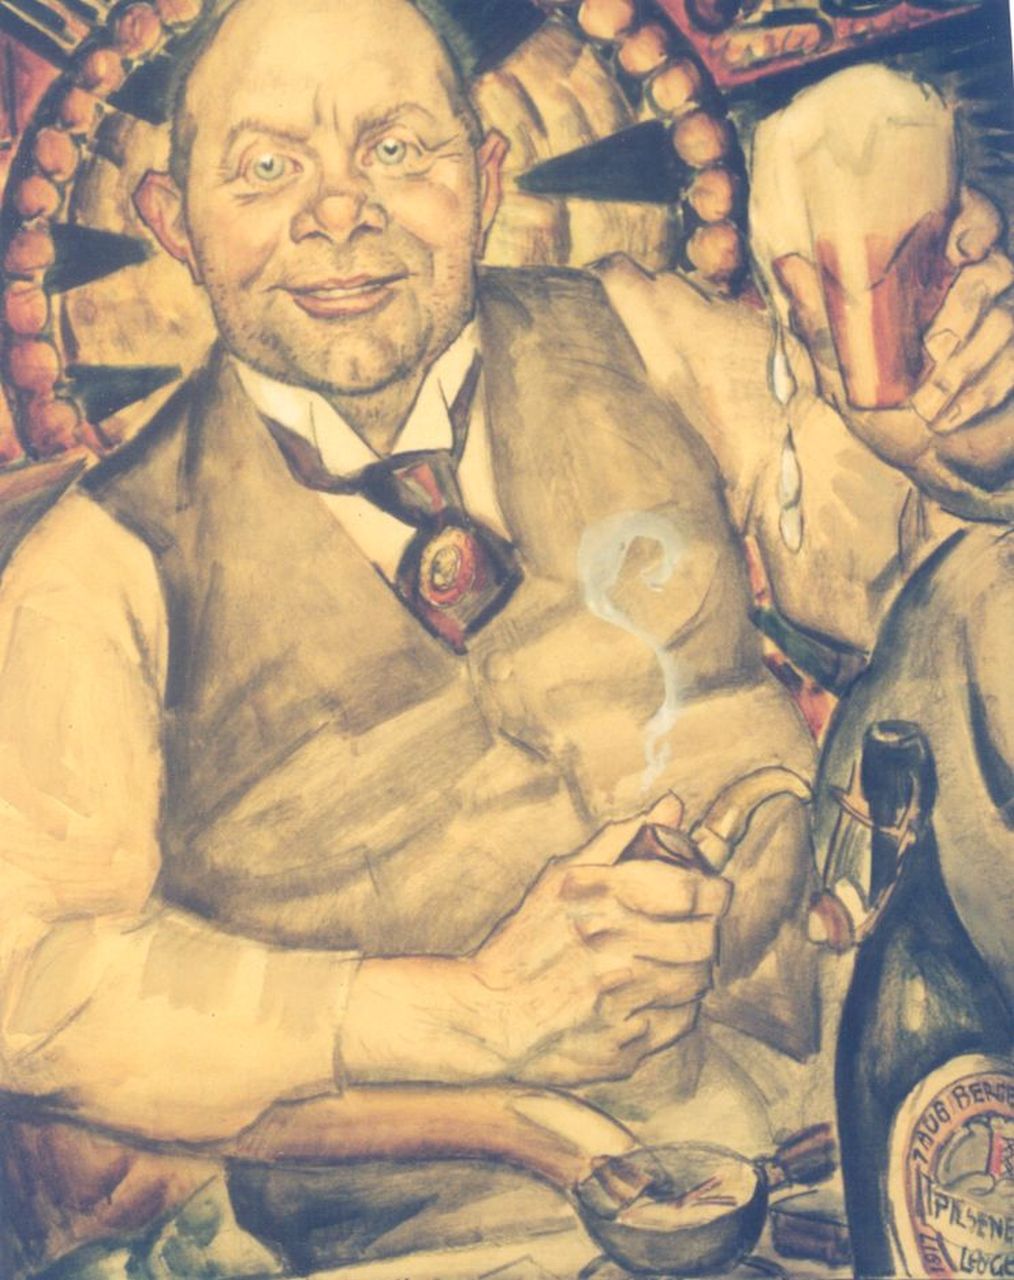 Gestel L.  | Leendert 'Leo' Gestel, Piet Boendermaker, Schwarze Kreide und Aquarell auf Papier 77,5 x 69,0 cm, signed l.r. und dated August 1st Bergen 1917 on the bottle